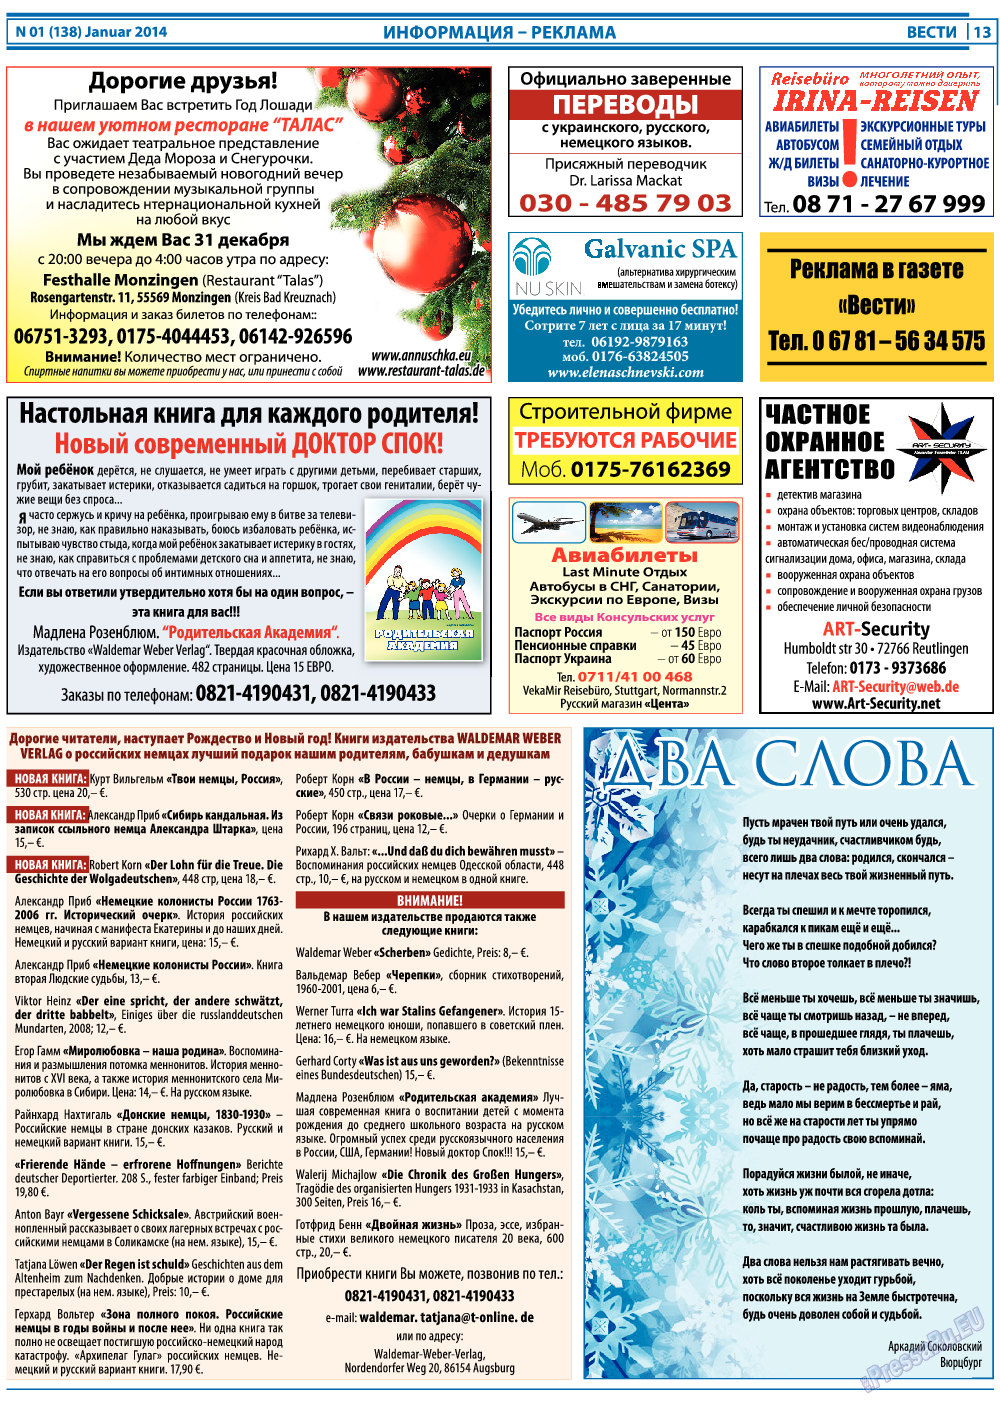 Вести, газета. 2014 №1 стр.13